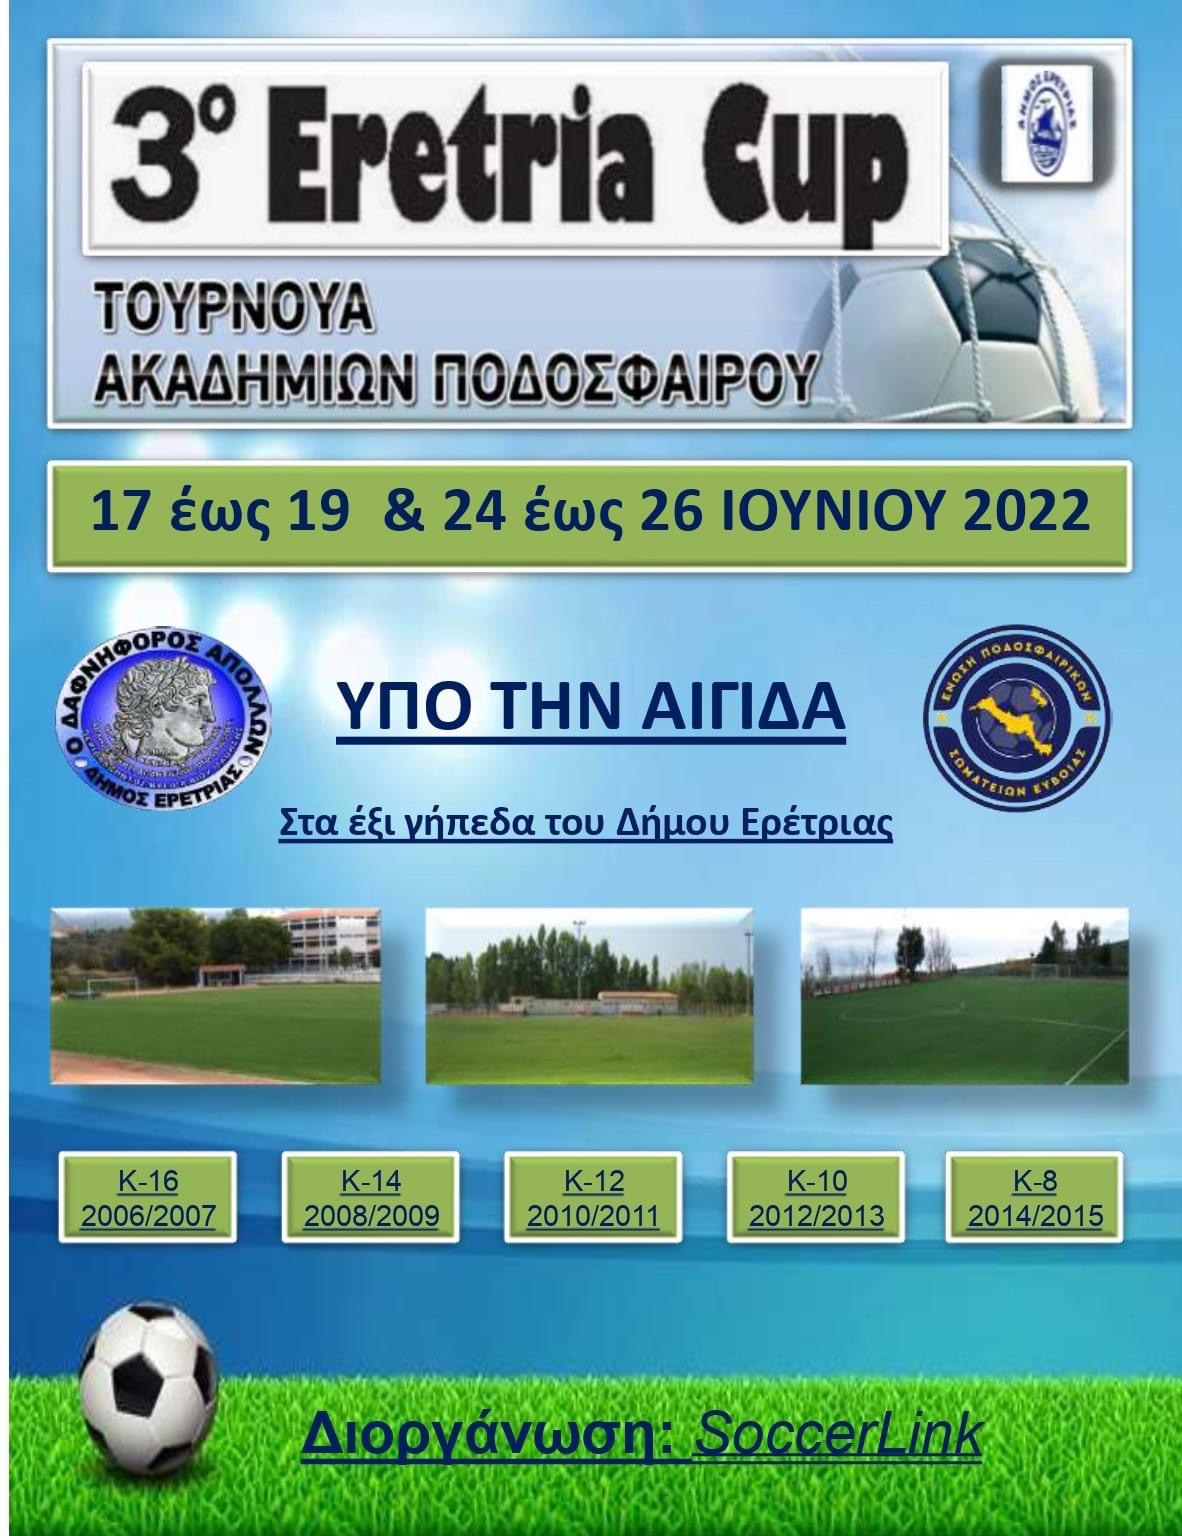 Δήμος Ερέτριας: Έρχεται το 3ο Eretria Cup – Δείτε το πρόγραμμα του τουρνουά